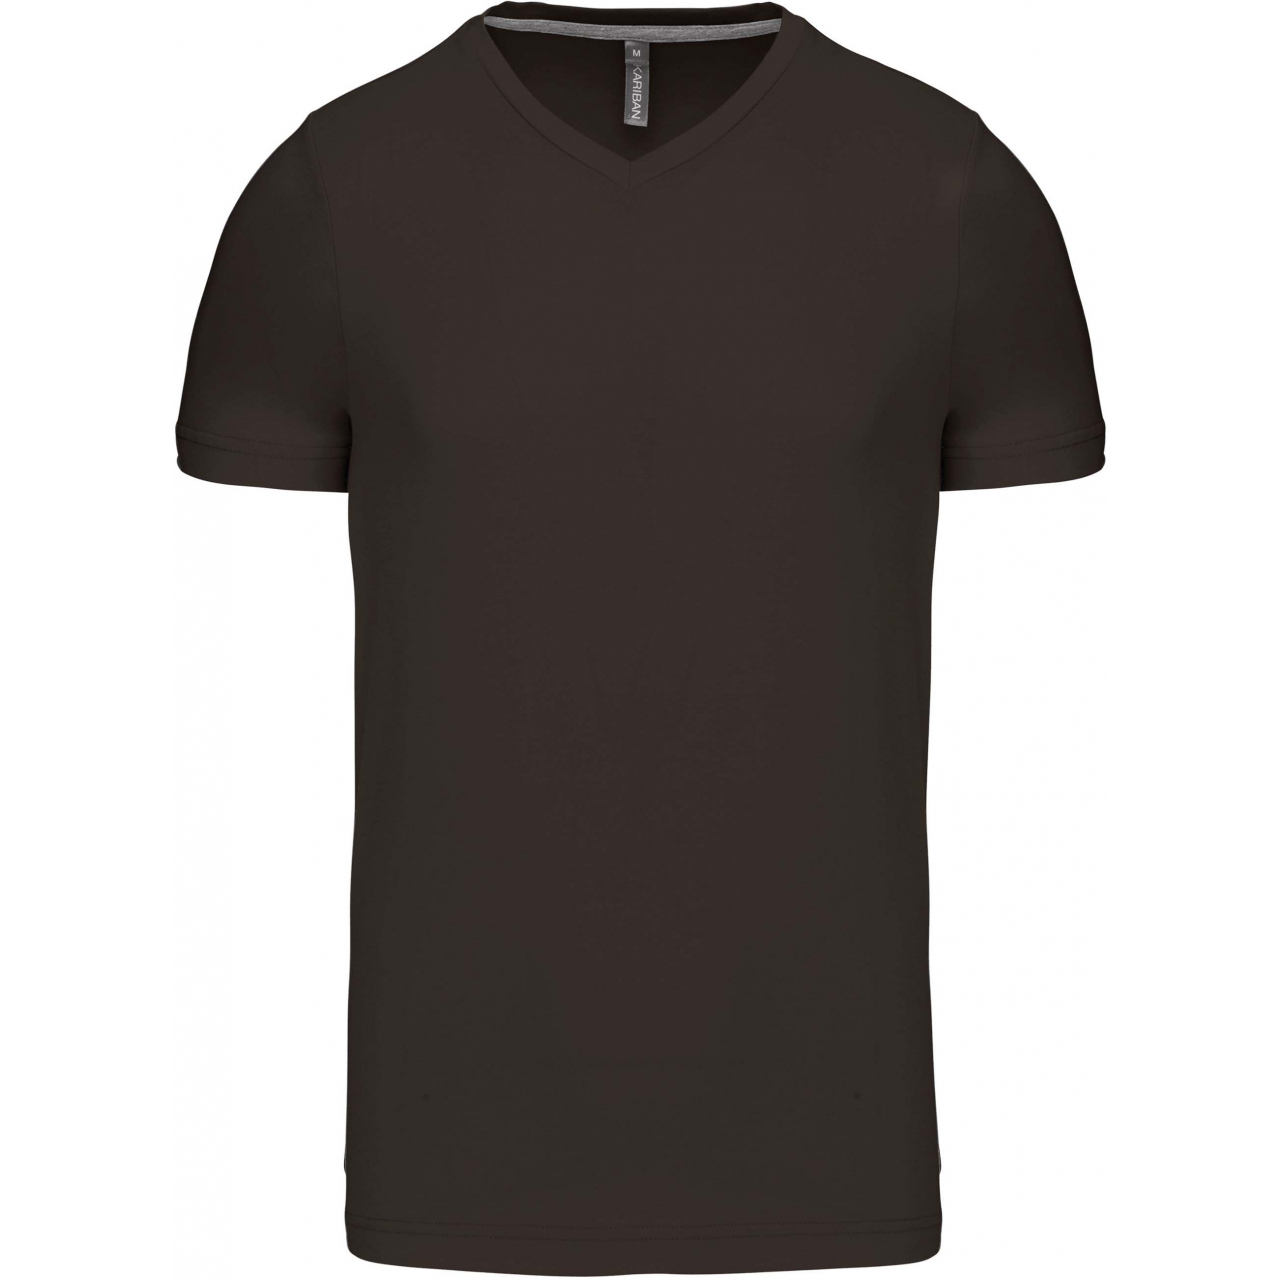 Pánské tričko Kariban krátký rukáv V-neck - tmavé khaki, M